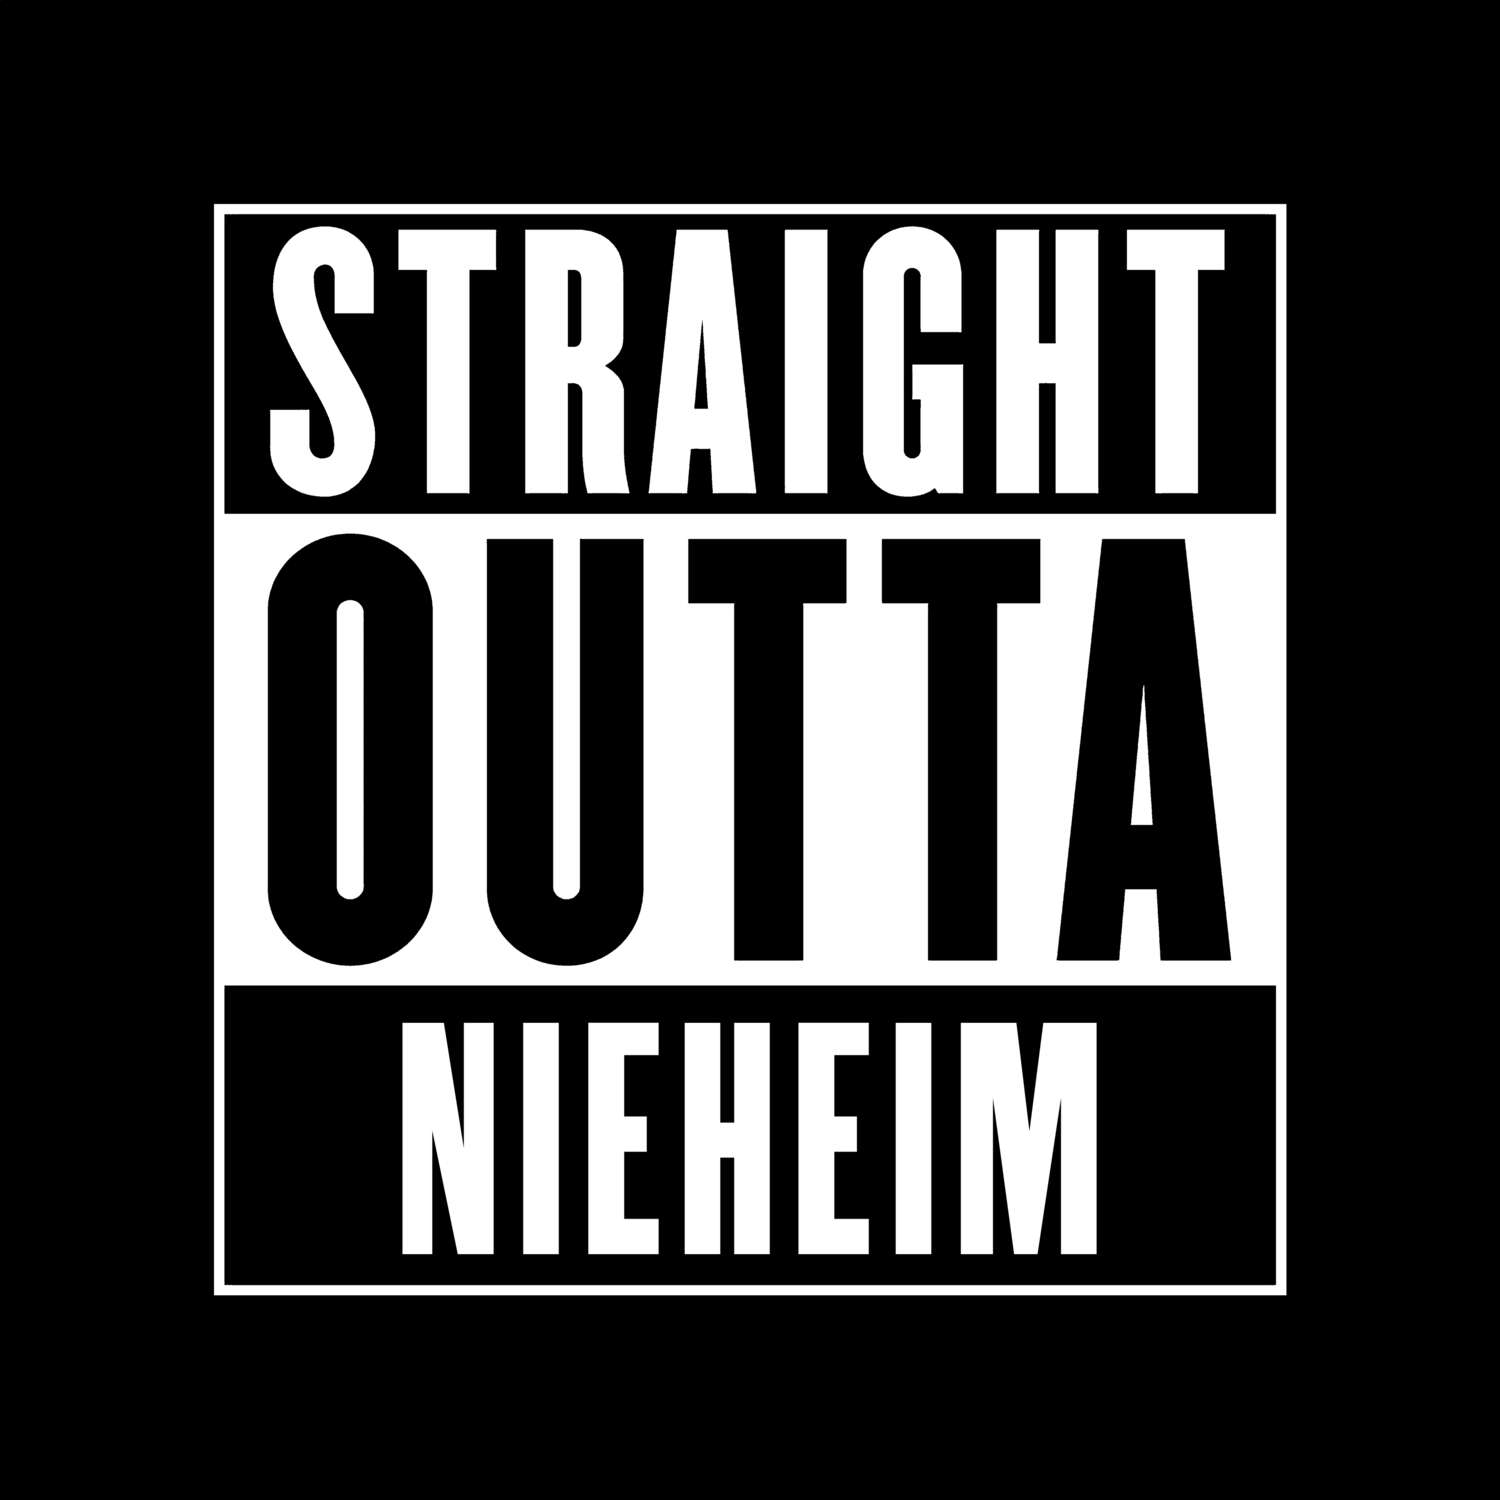 Nieheim T-Shirt »Straight Outta«